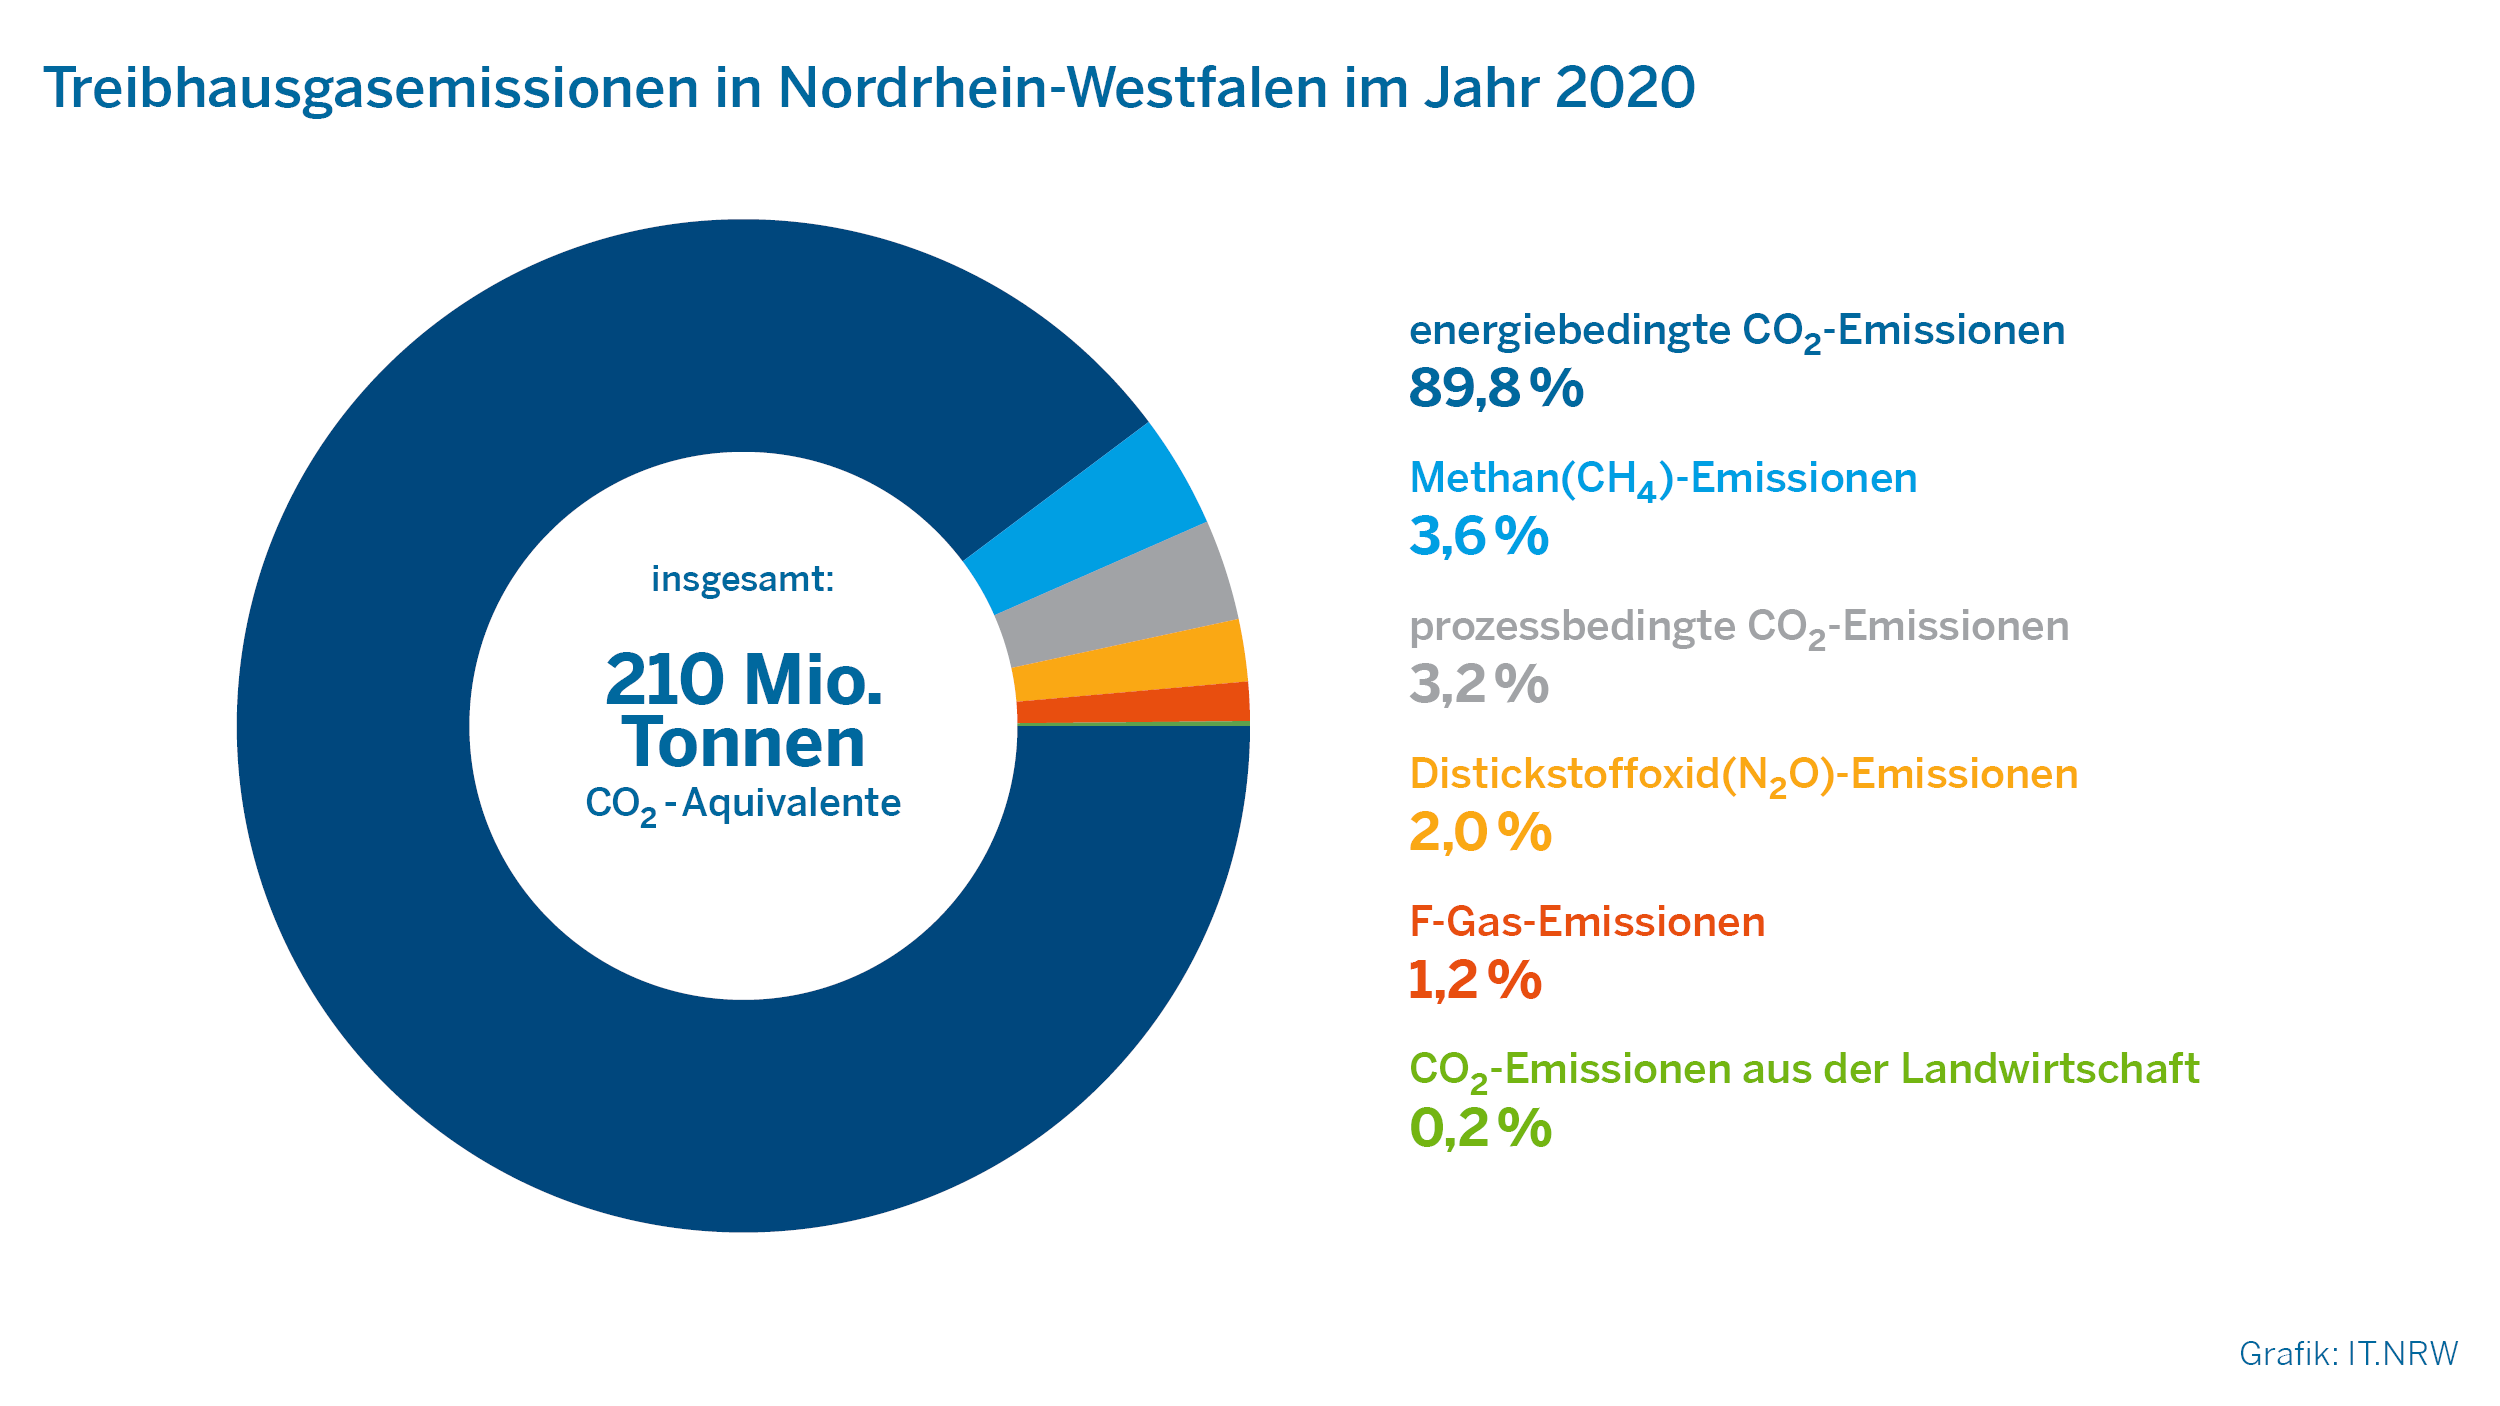 Treibhausgasemissionen in Nordrhein-Westfalen im jahr 2020